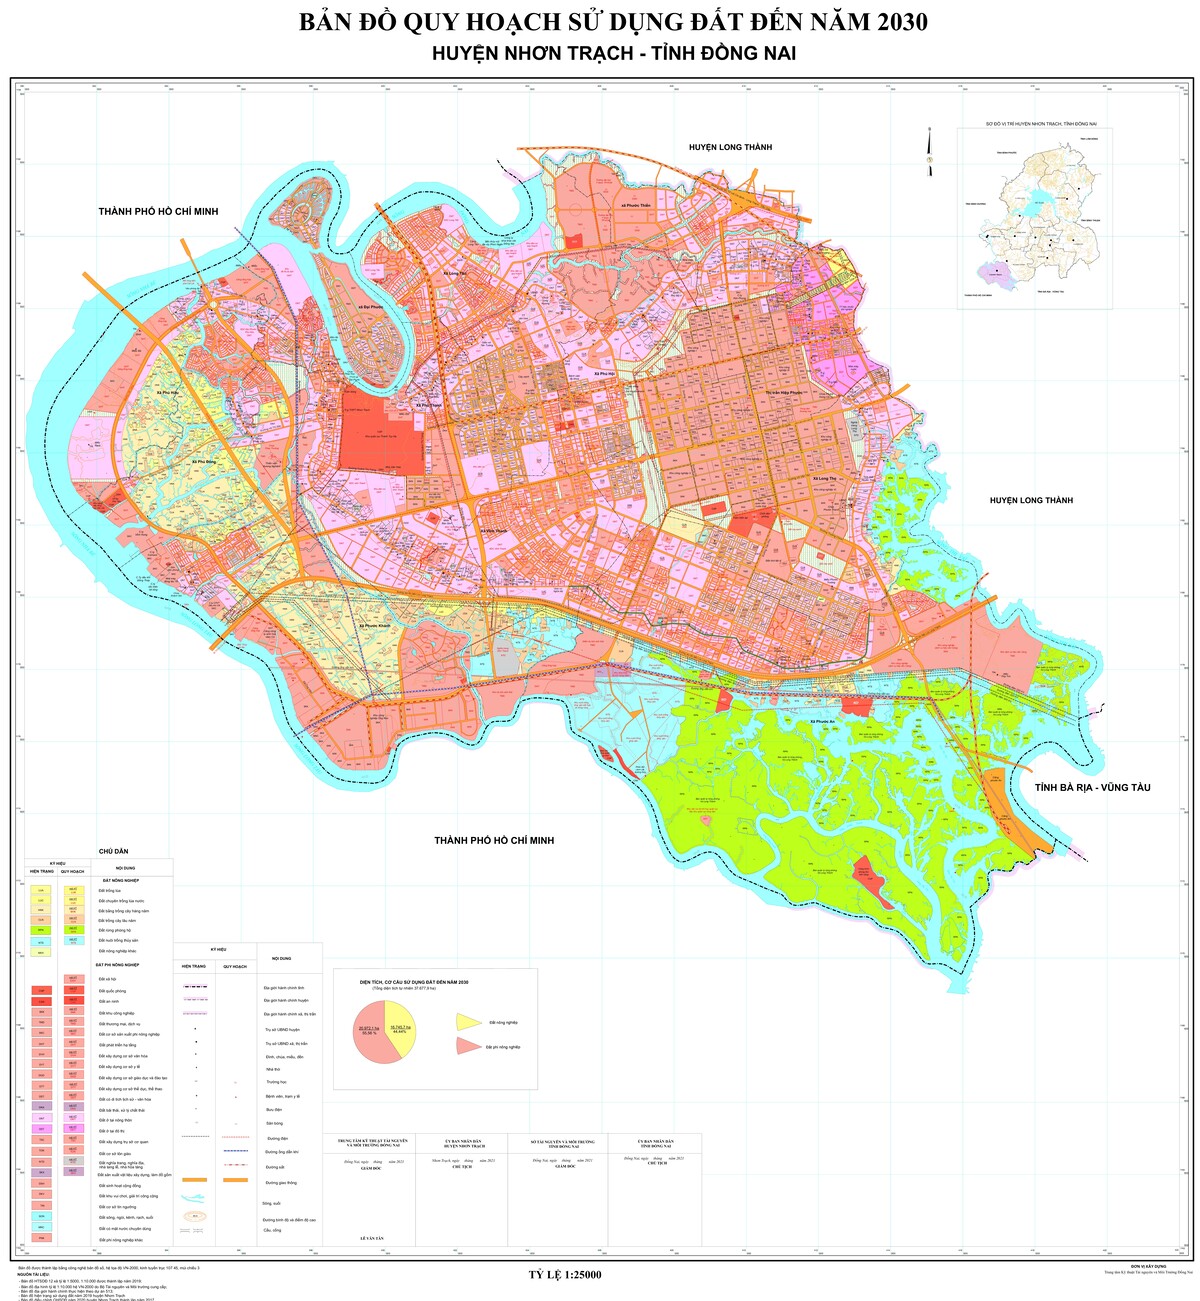 Bản đồ quy hoạch huyện Nhơn Trạch, tỉnh Đồng Nai đến năm 2030